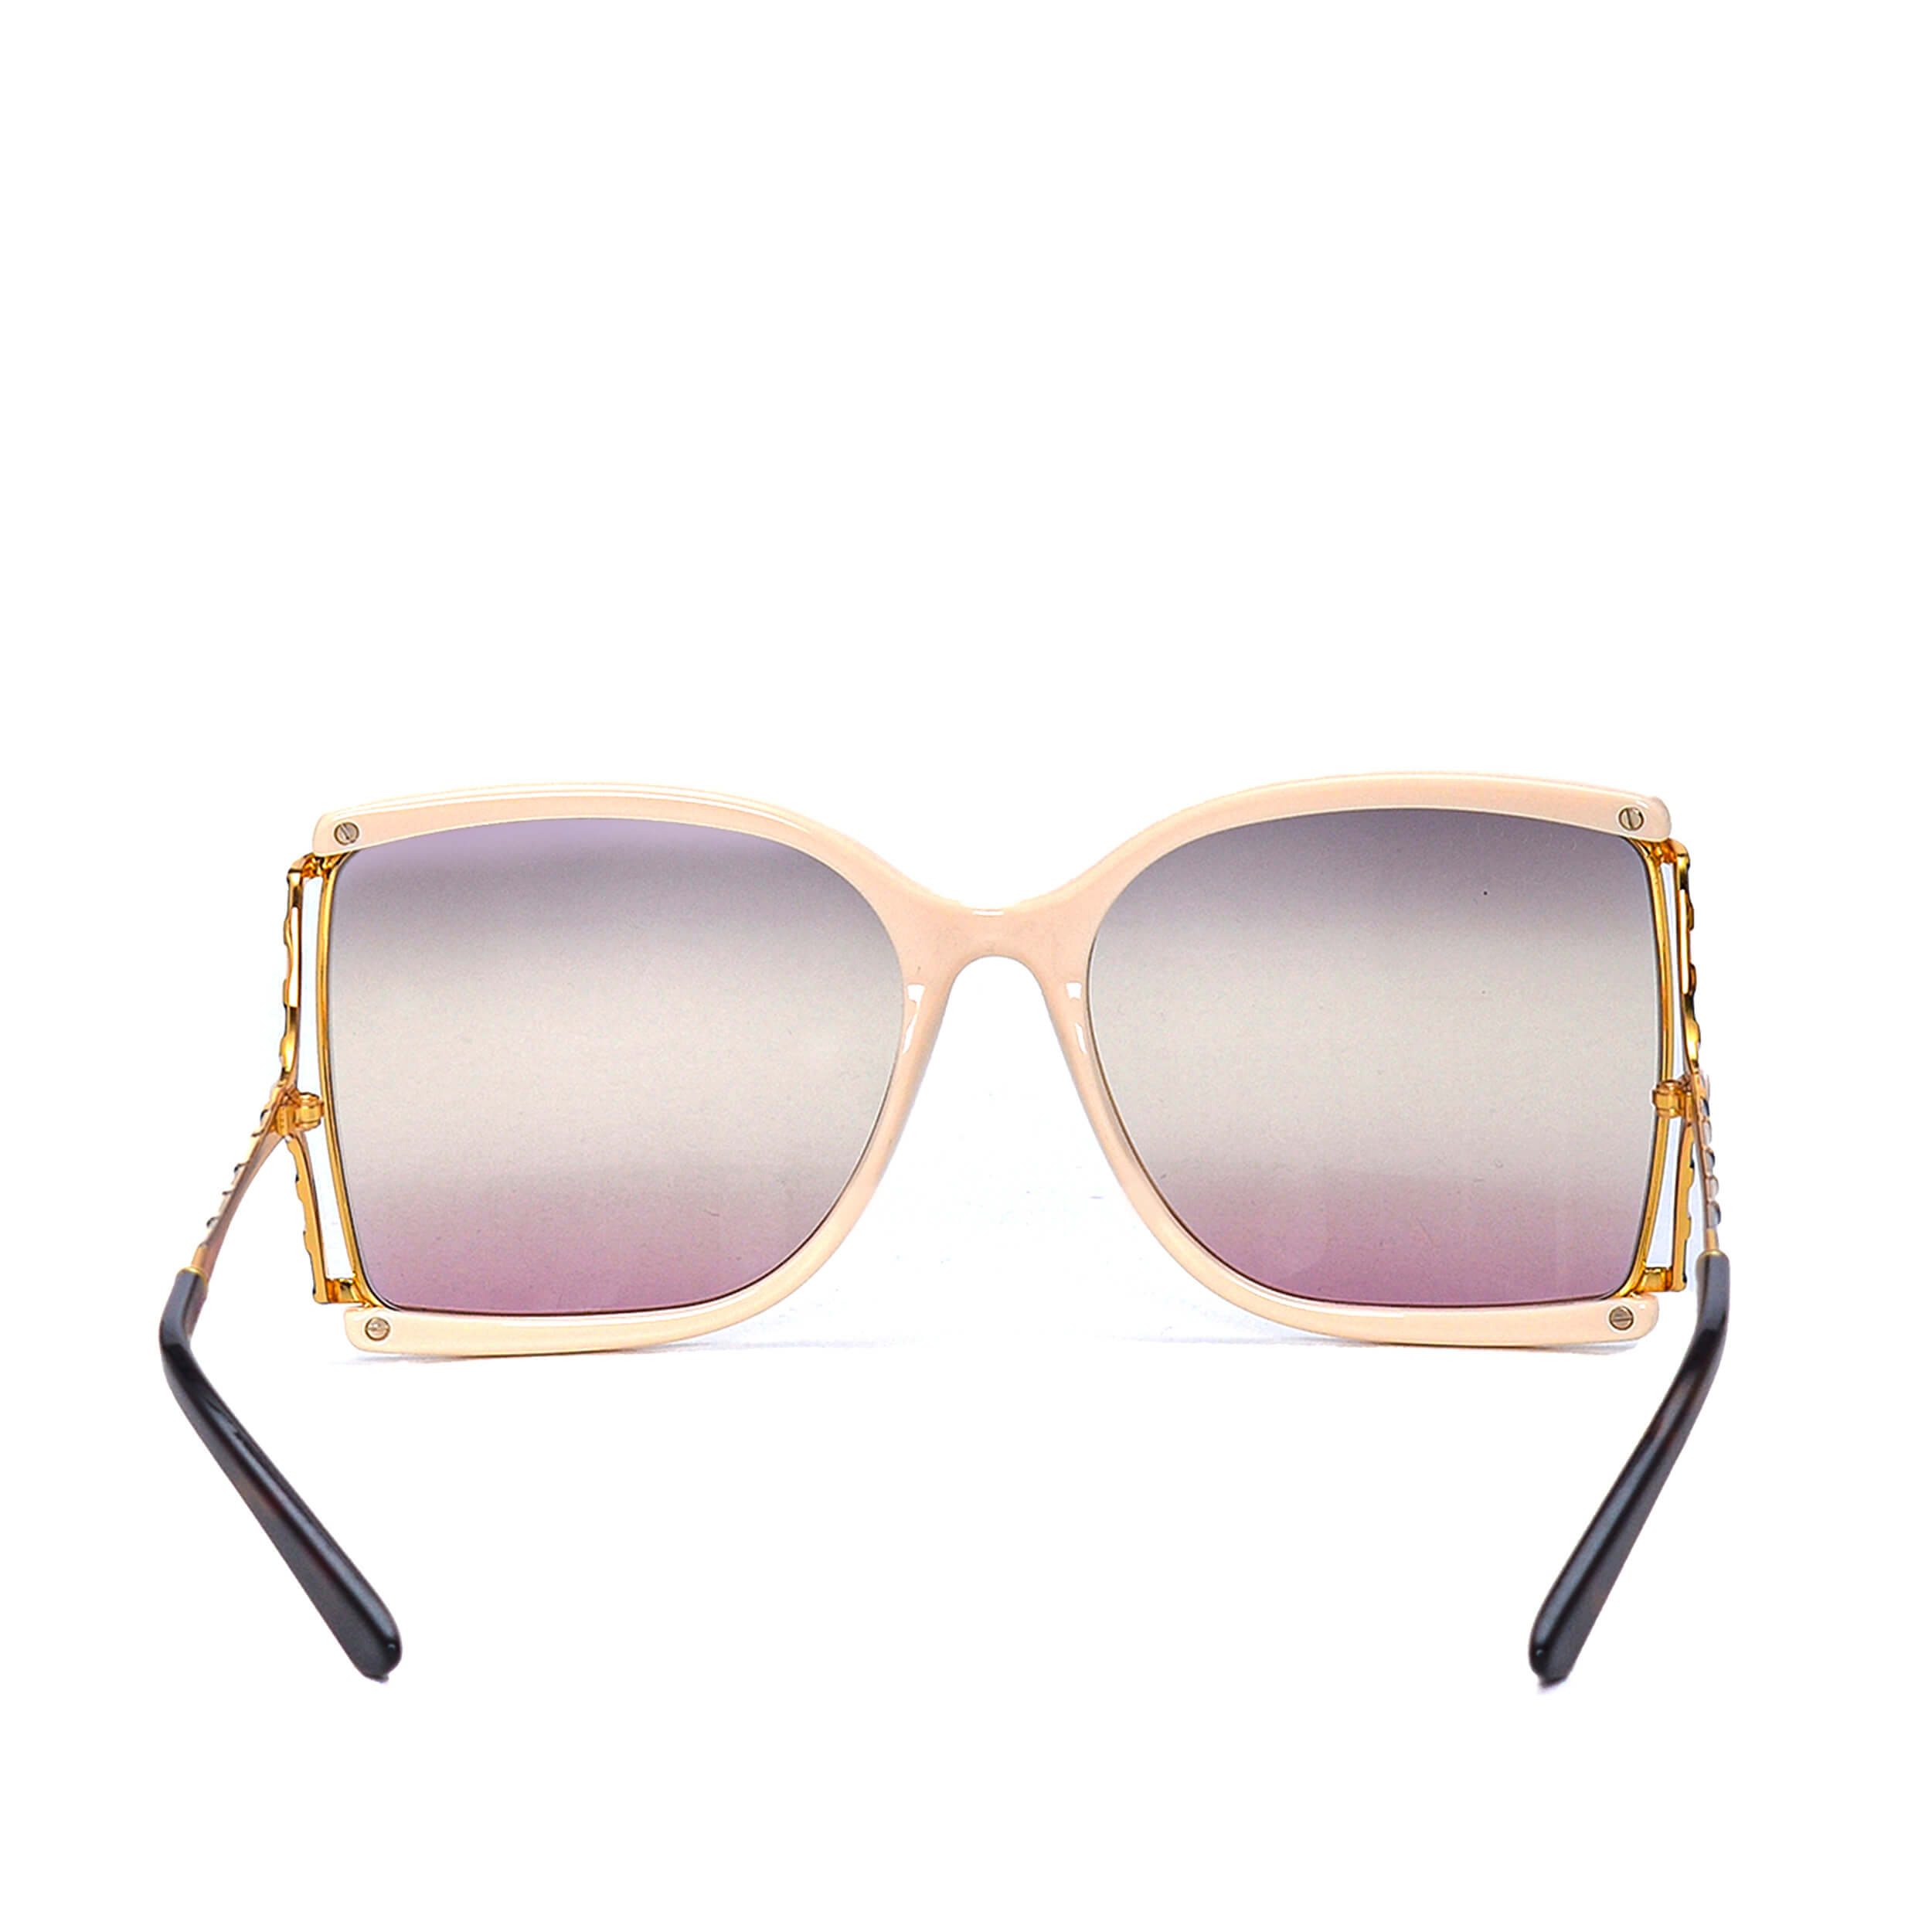 Gucci - White & Light Gold Tone Square Sunglasses